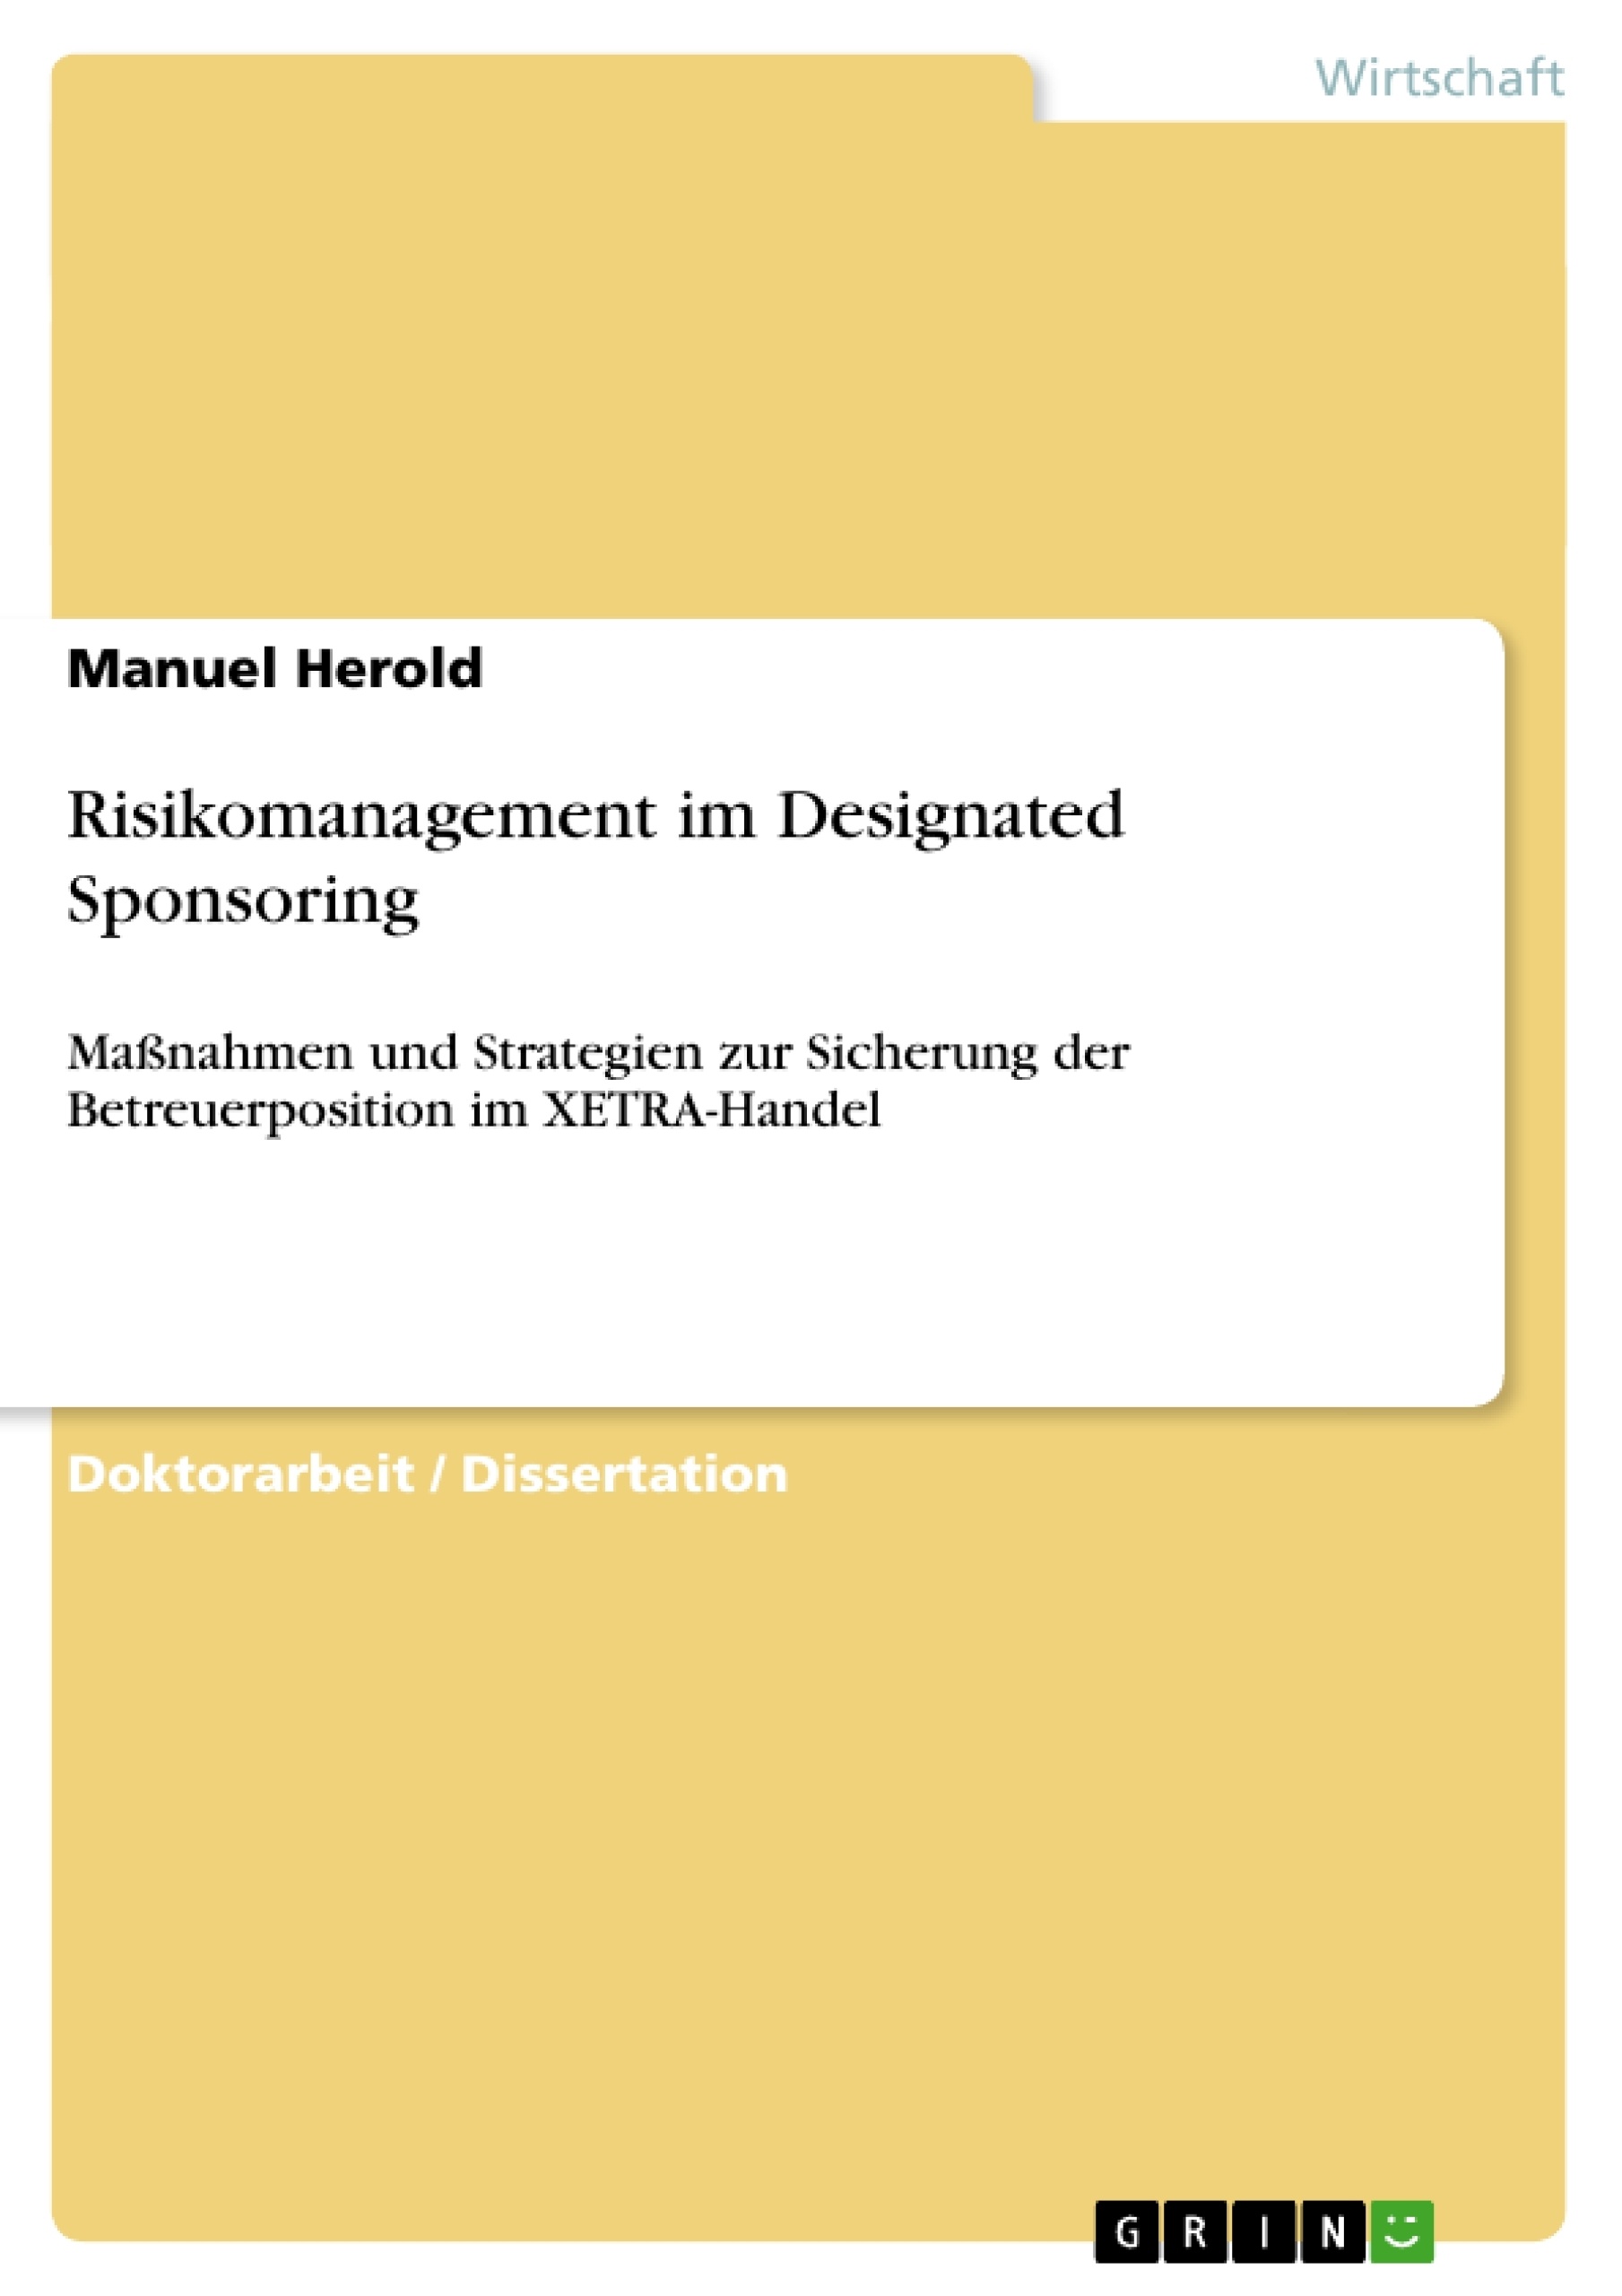 Título: Risikomanagement im Designated Sponsoring